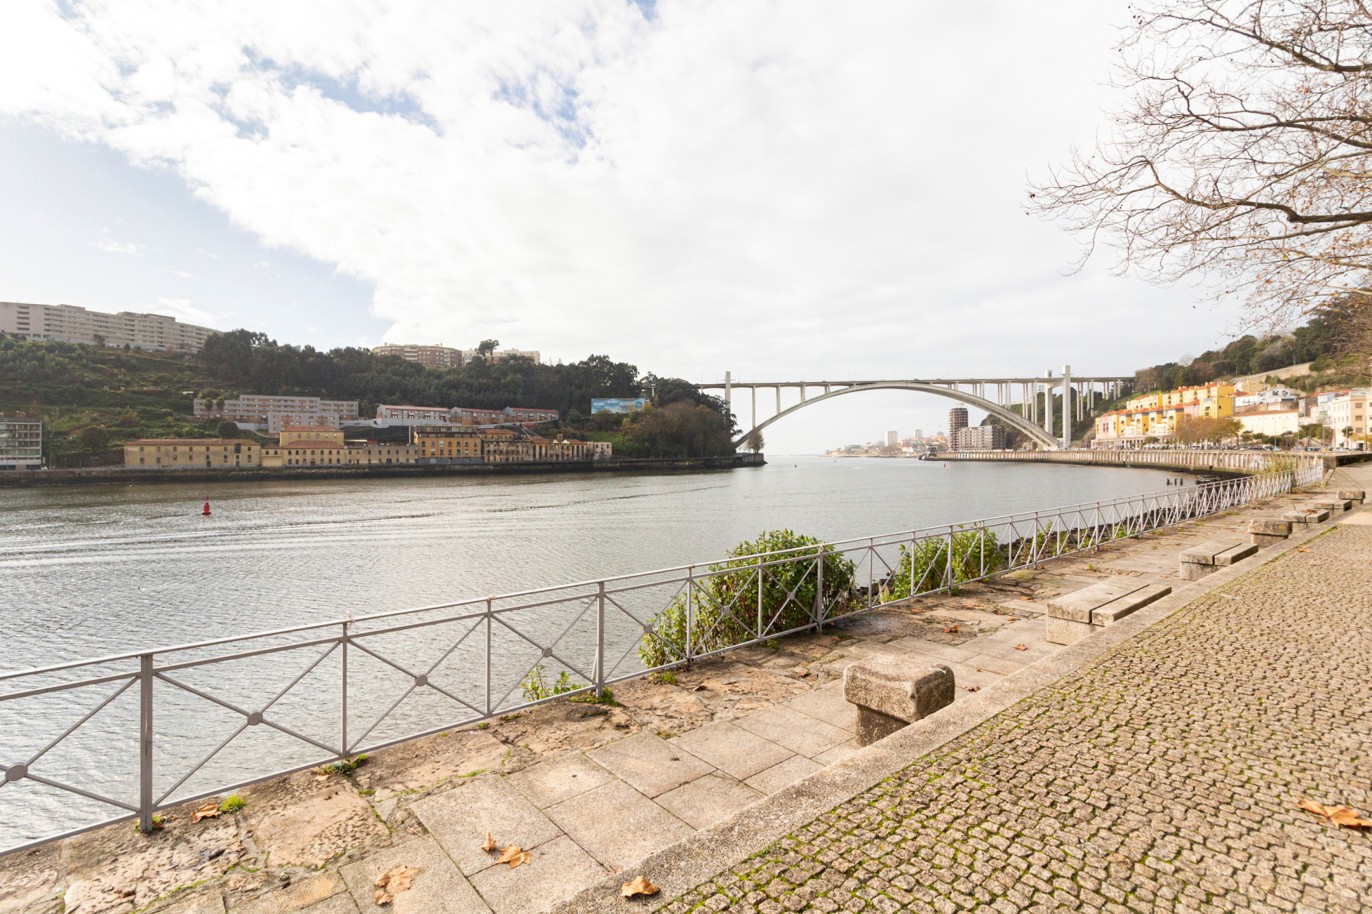 Moradia nova V2, para arrendar, em condomínio privado, junto ao rio, Porto, Portugal_217223